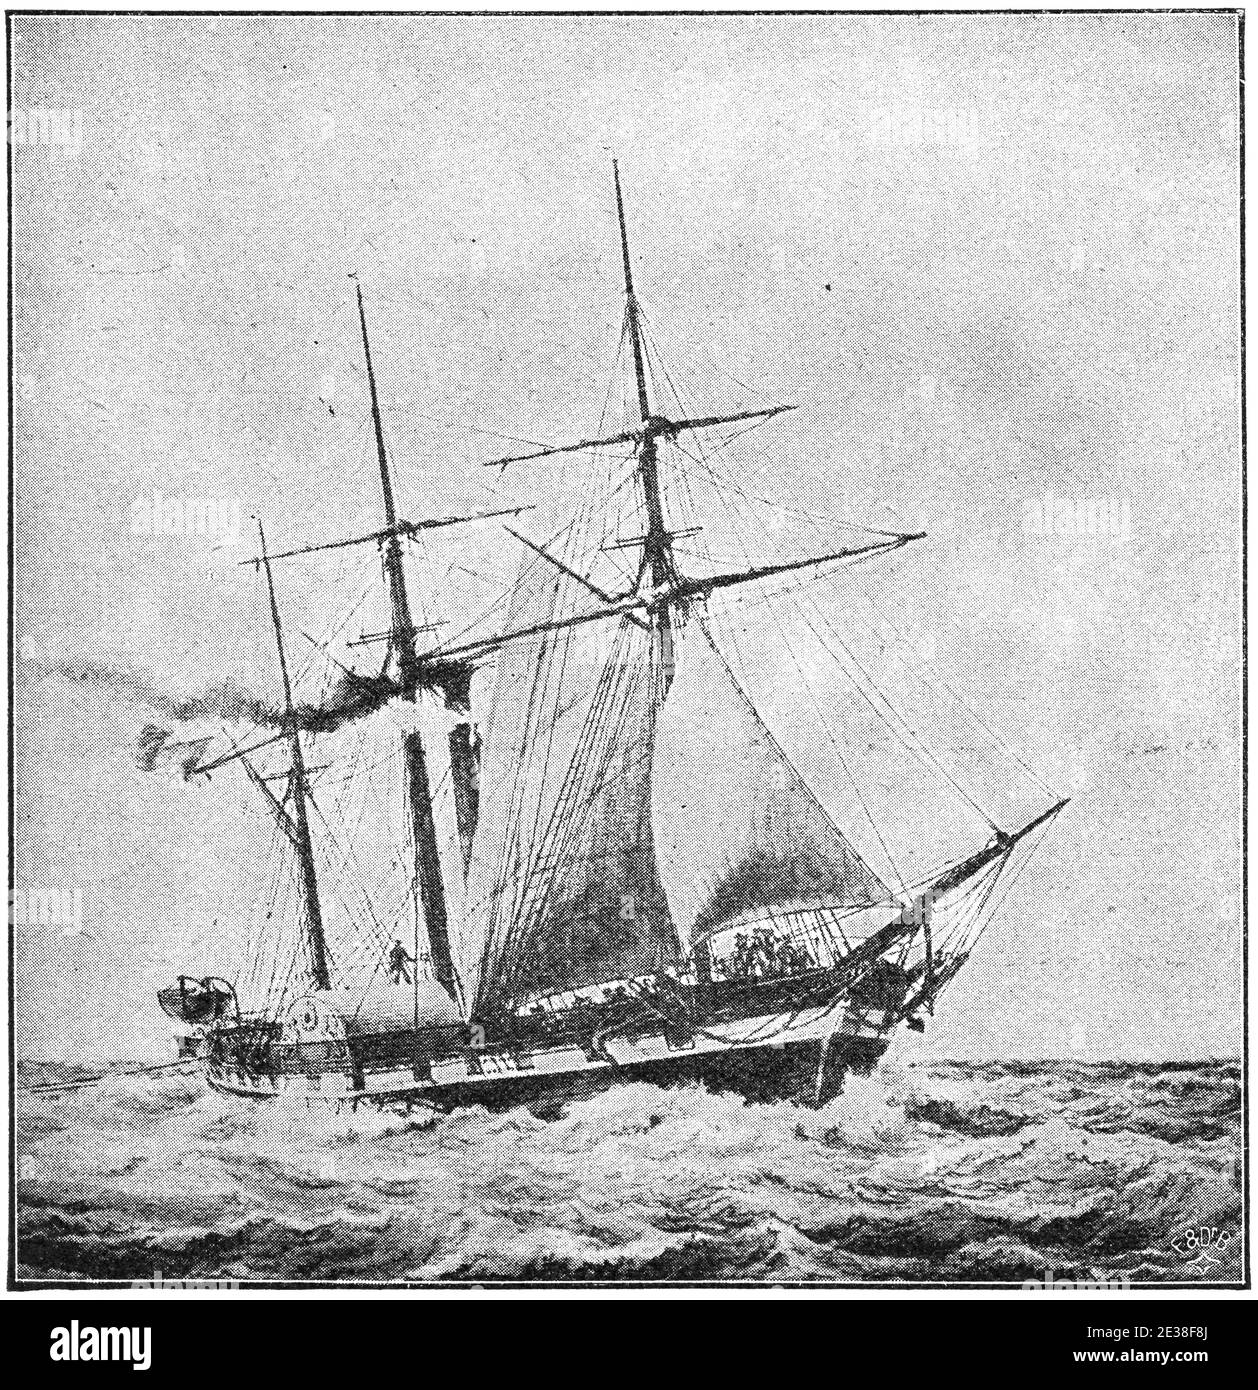 Sphinx (1829) - un bateau à vapeur à aubes, initialement classé comme corvette, de la Marine française. Illustration du 19e siècle. Allemagne. Arrière-plan blanc. Banque D'Images